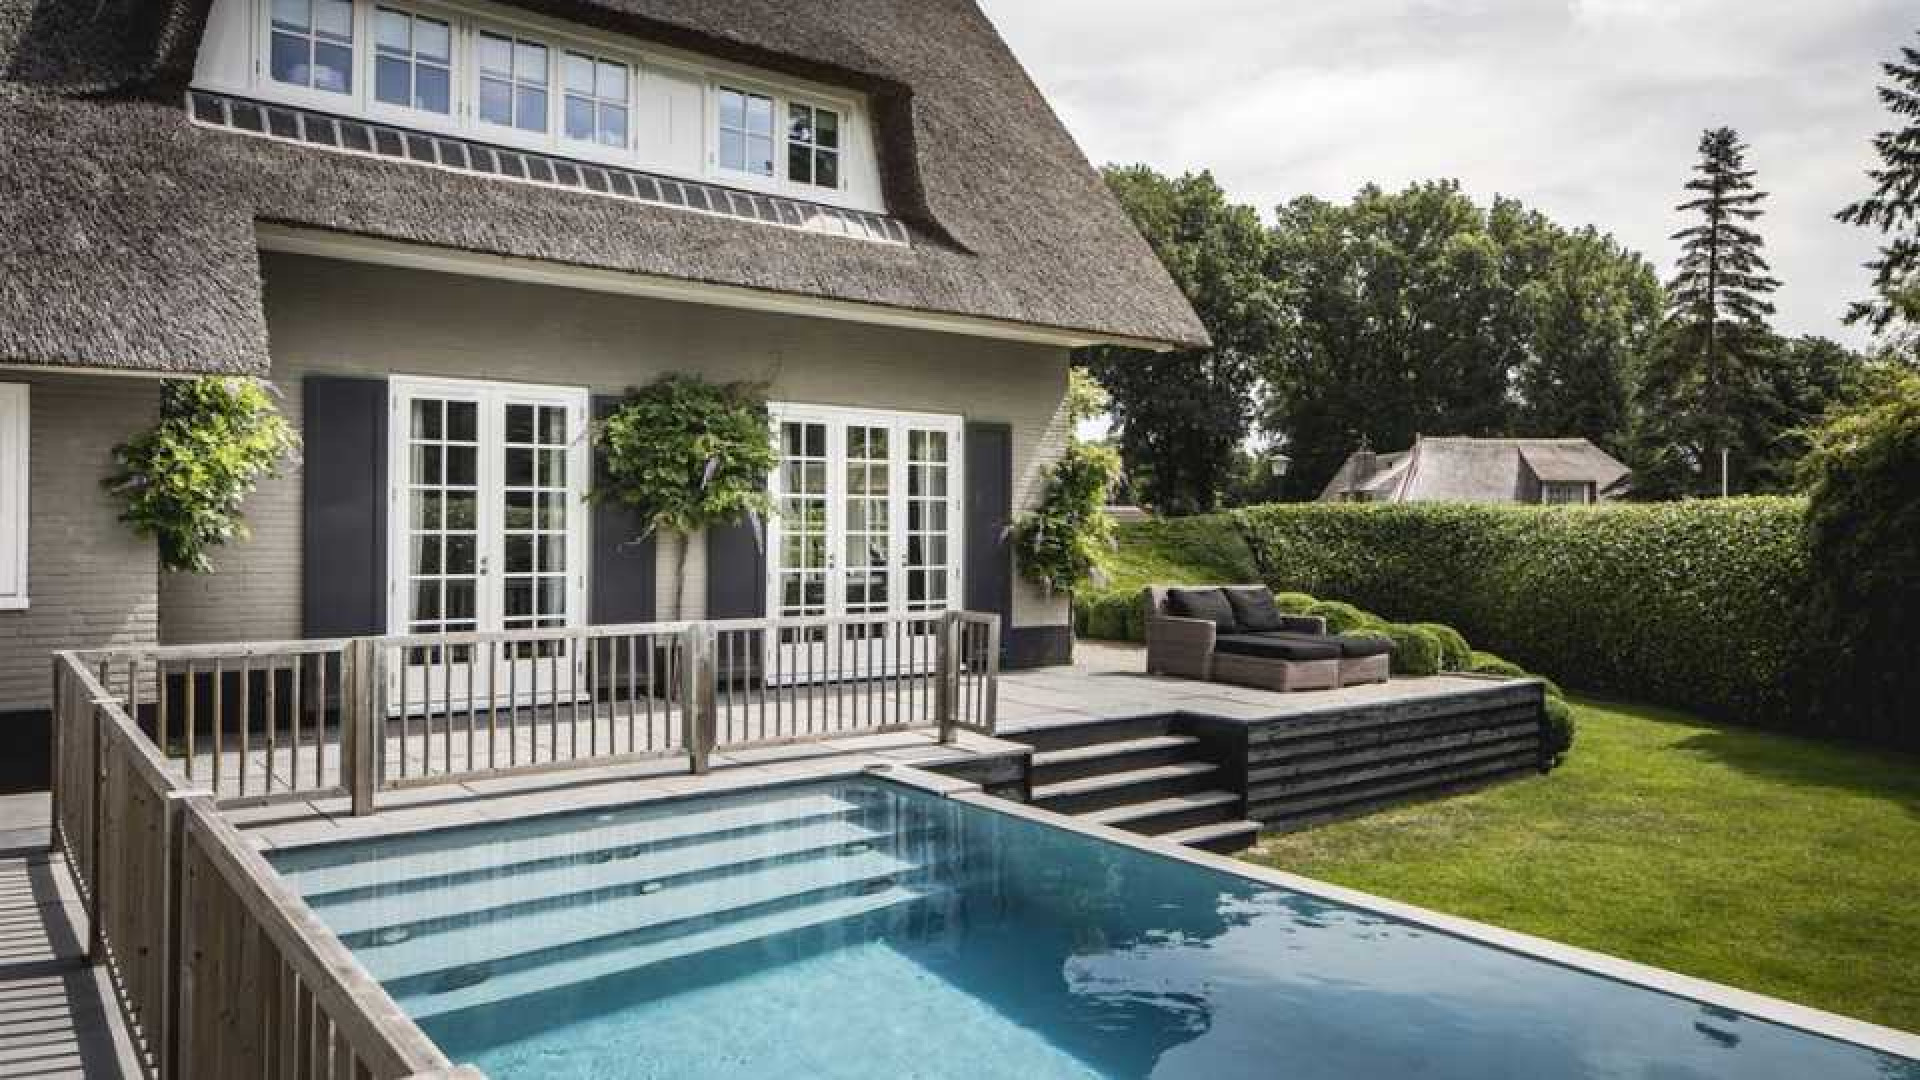 Winston en Renate Gerschtanowitz zetten hun villa met buiten zwembad te koop. Zie foto's